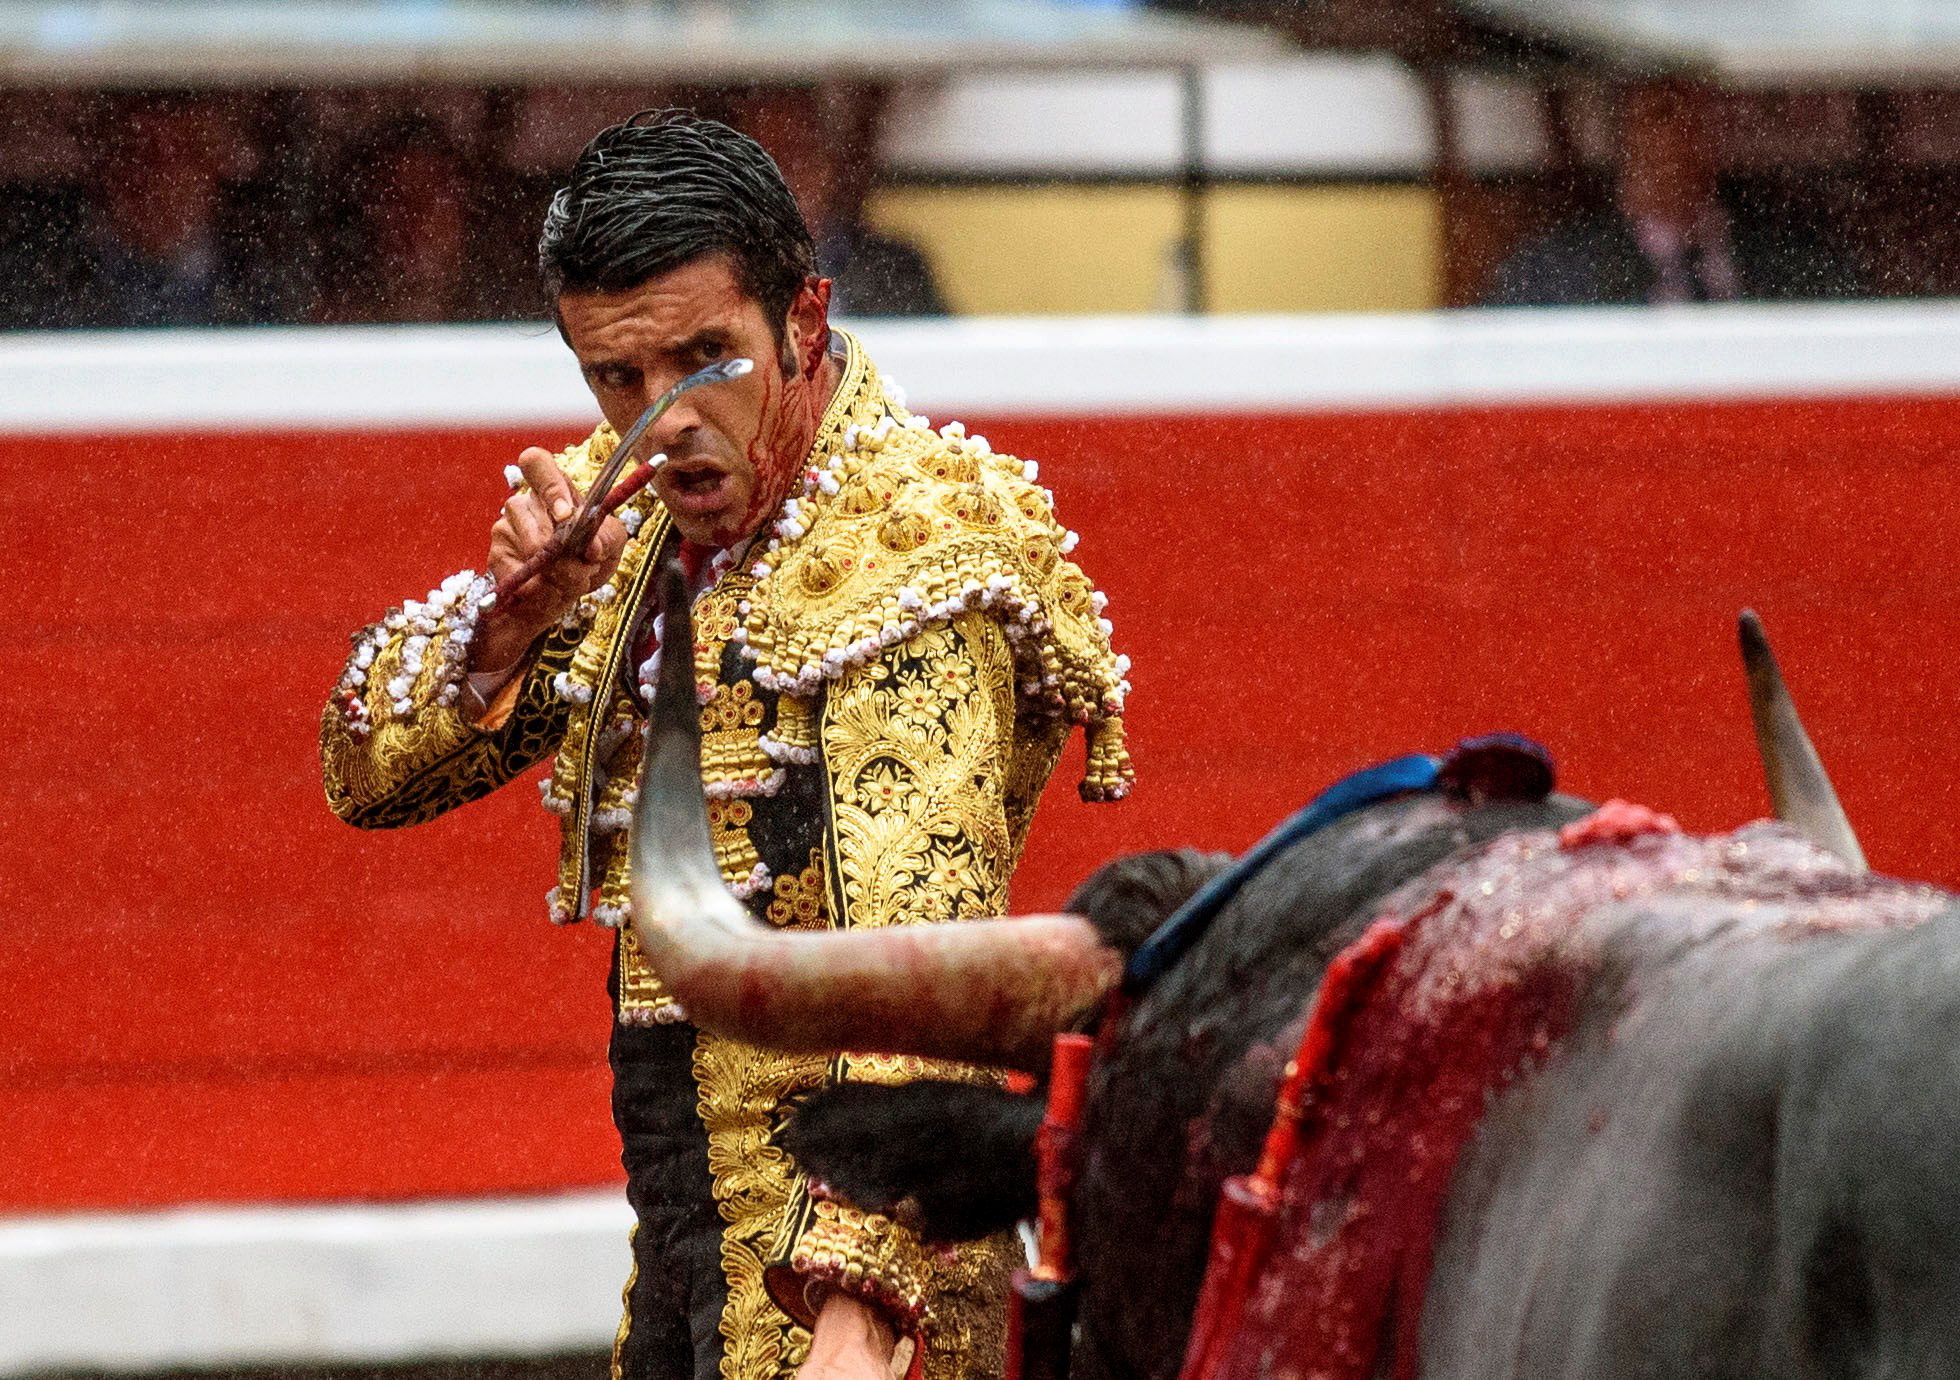 8月18日,在西班牙毕尔巴鄂,西班牙斗牛士埃米利奥·德胡斯托遭到公牛